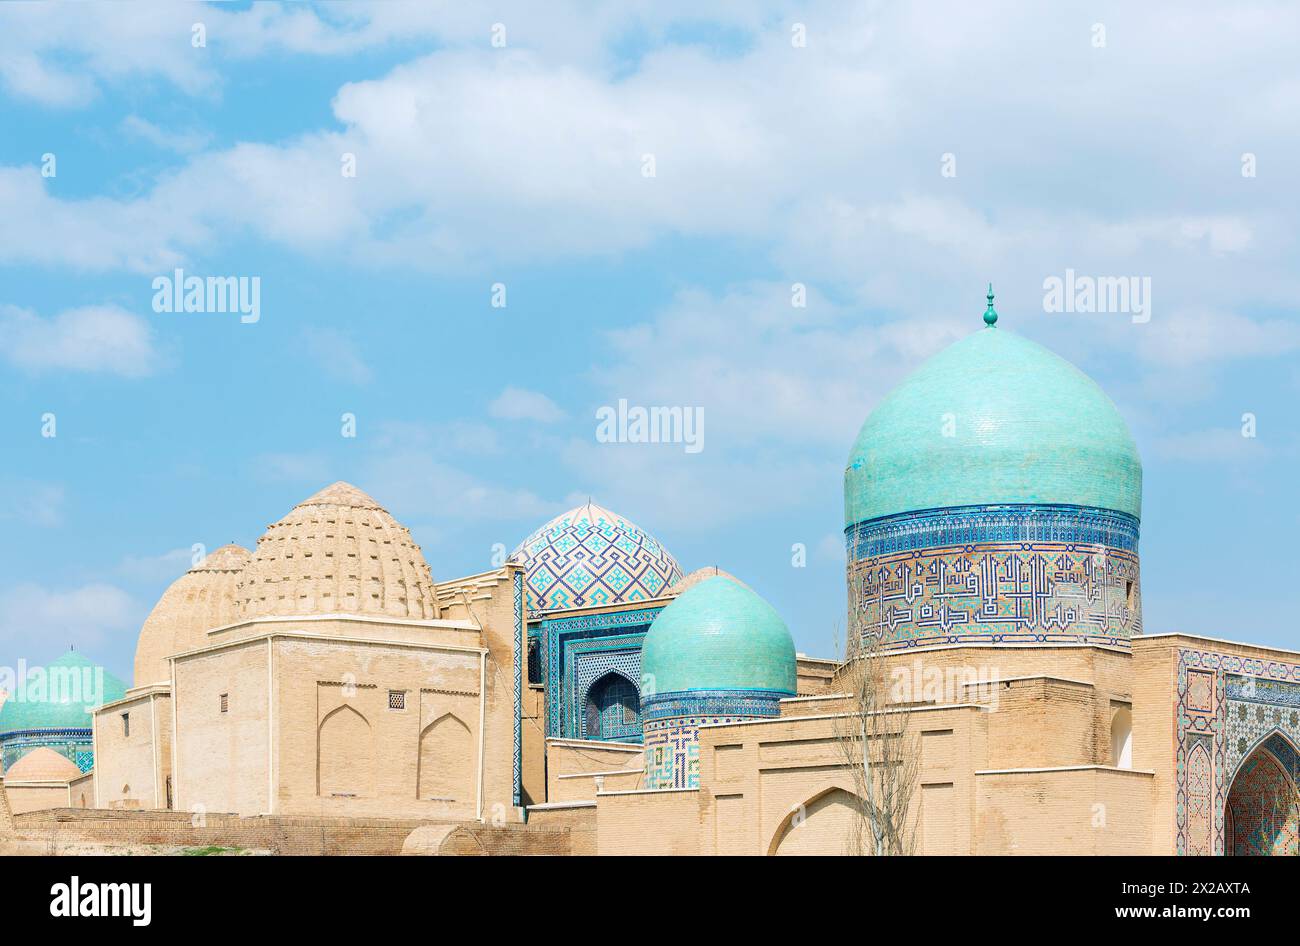 Splendida vista dello Shah-i-Zinda Ensemble a Samarcanda, Uzbekistan. Mausolei decorati con piastrelle blu con disegni. La necropoli è un touri popolare Foto Stock